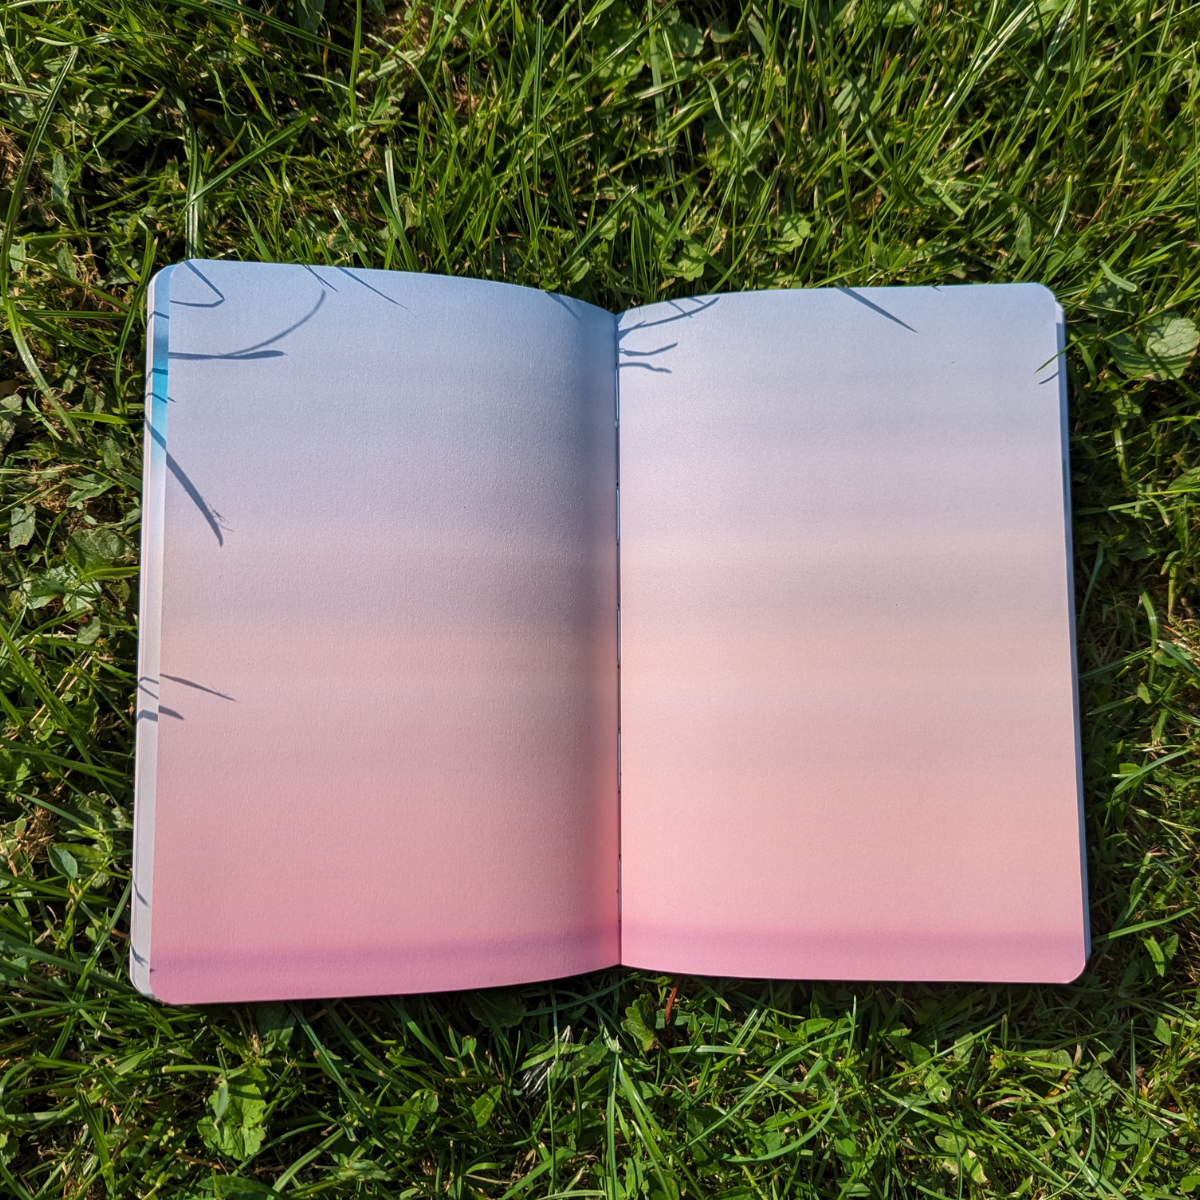 Les pages blanches d’un cahier, parfois intimidantes, ont été transformées en paysages colorés.